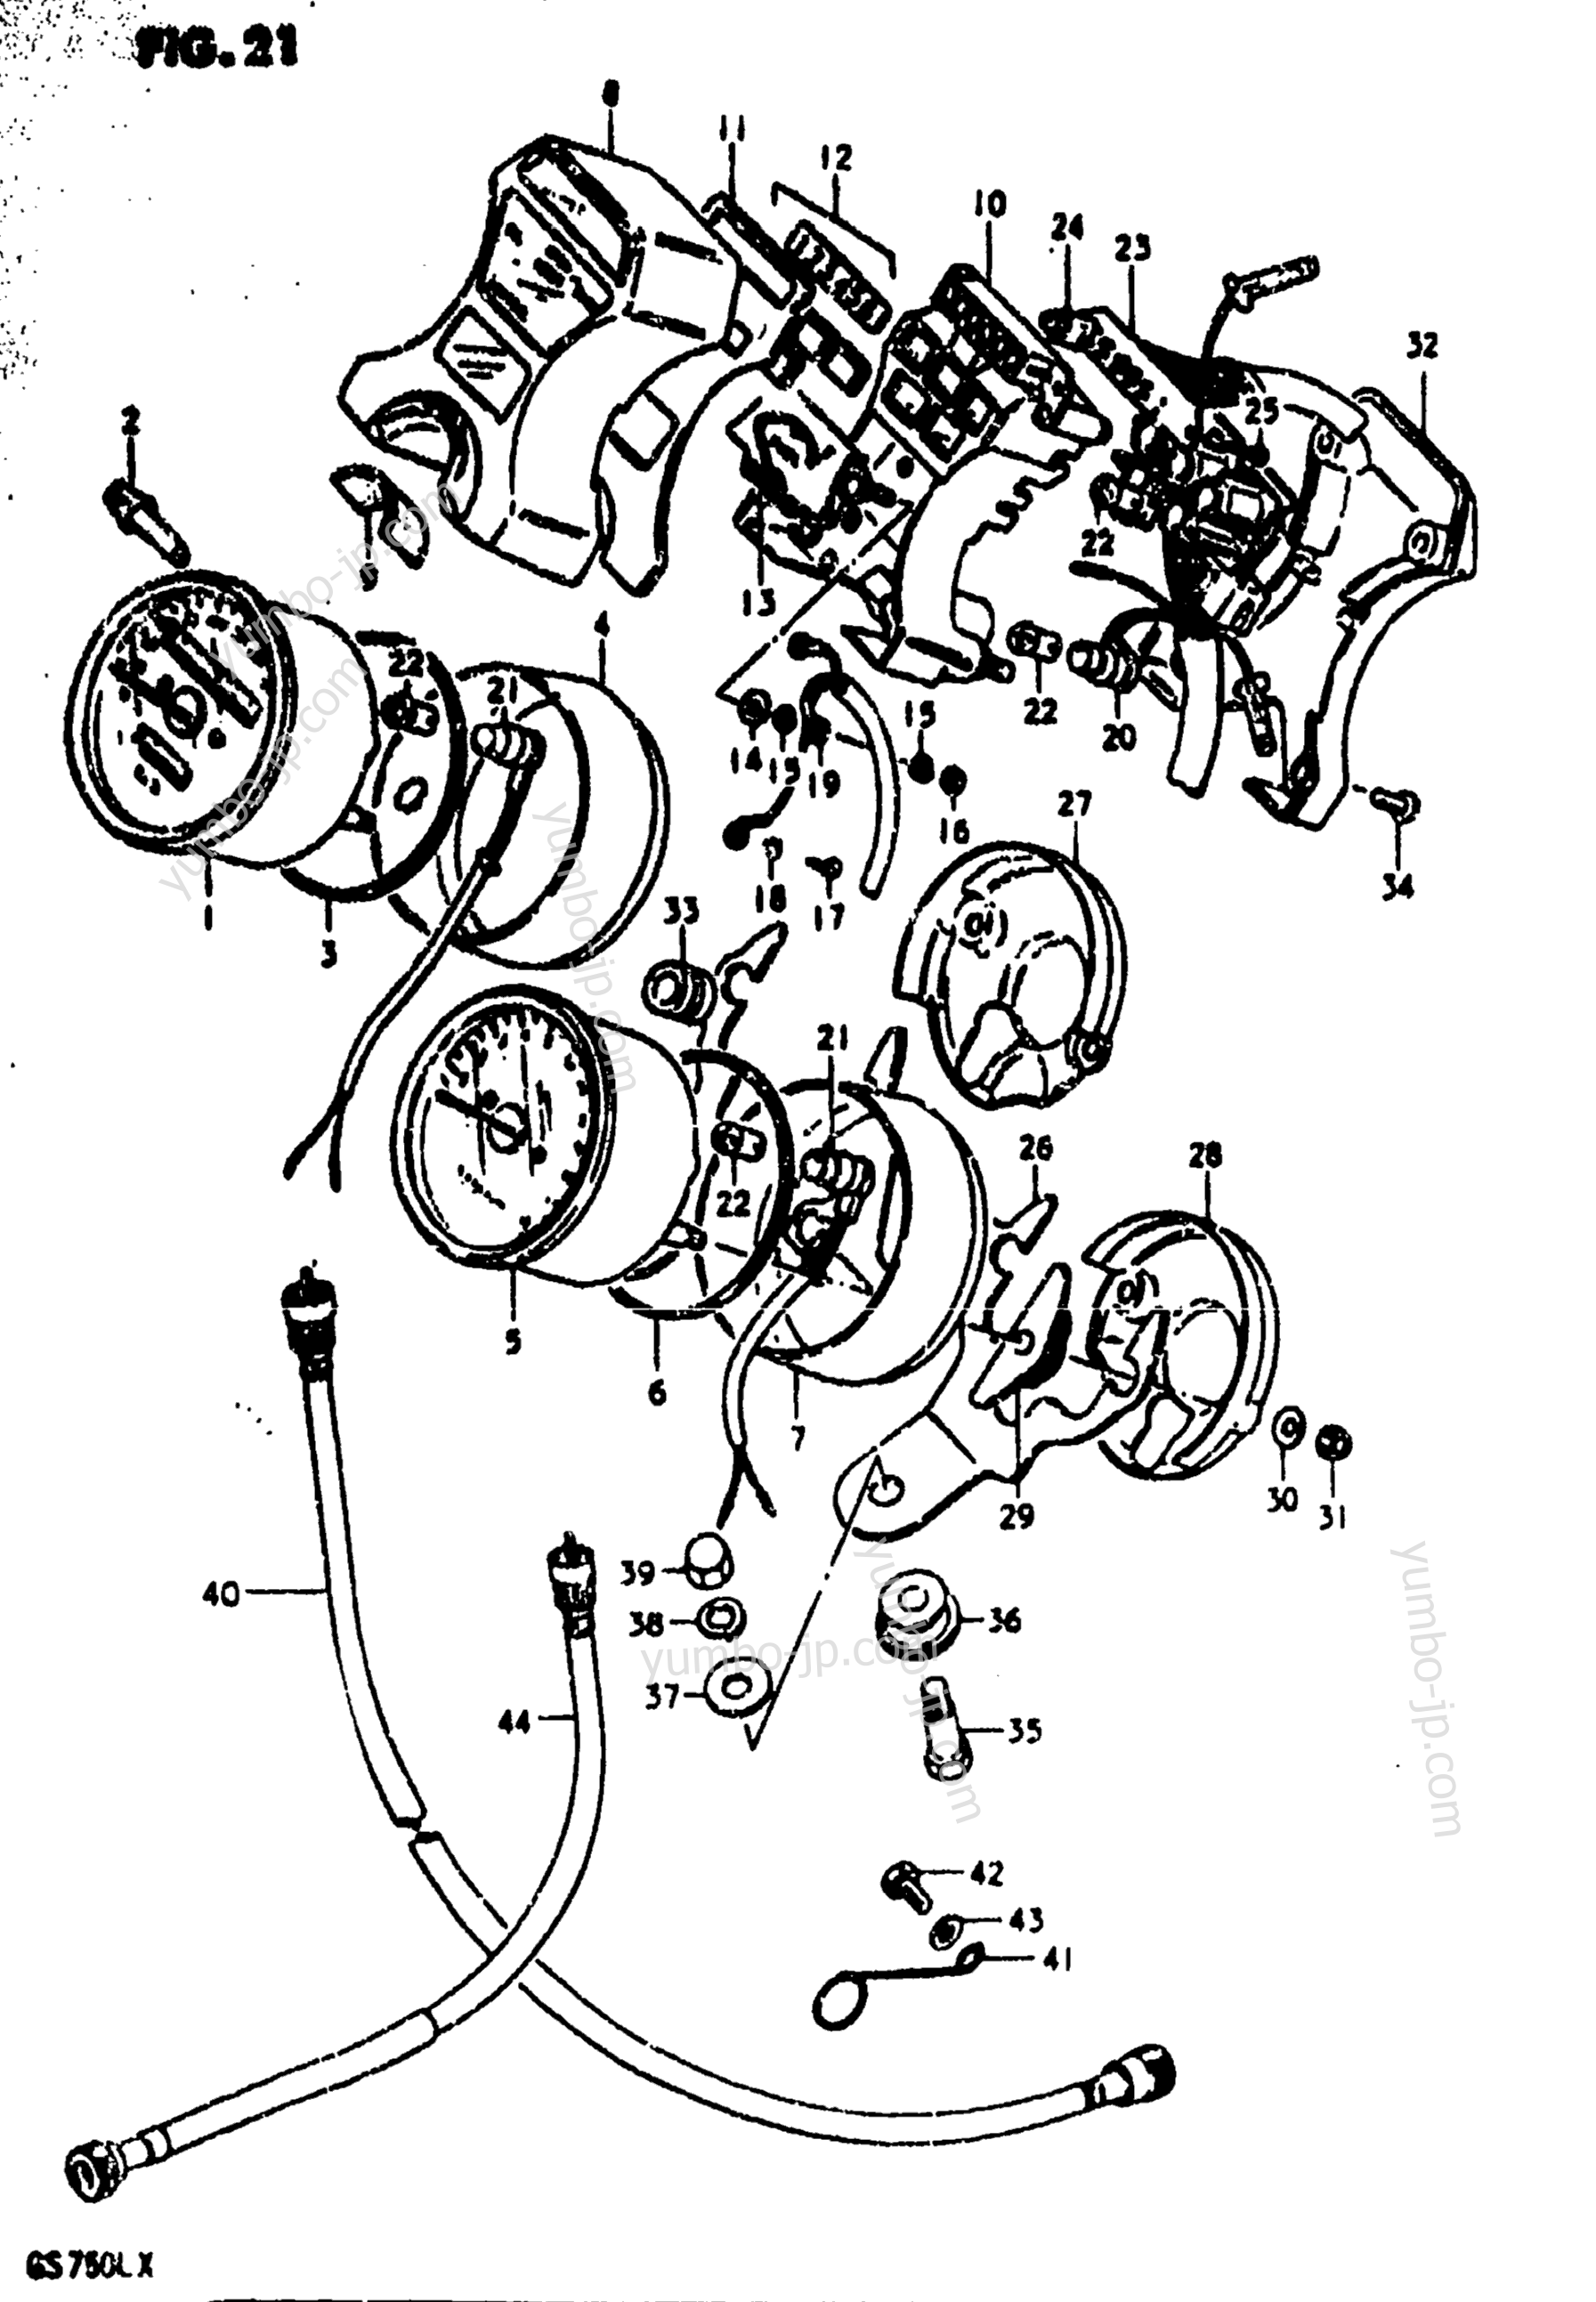 Speedometer - Tachometer for motorcycles SUZUKI GS750L 1980 year